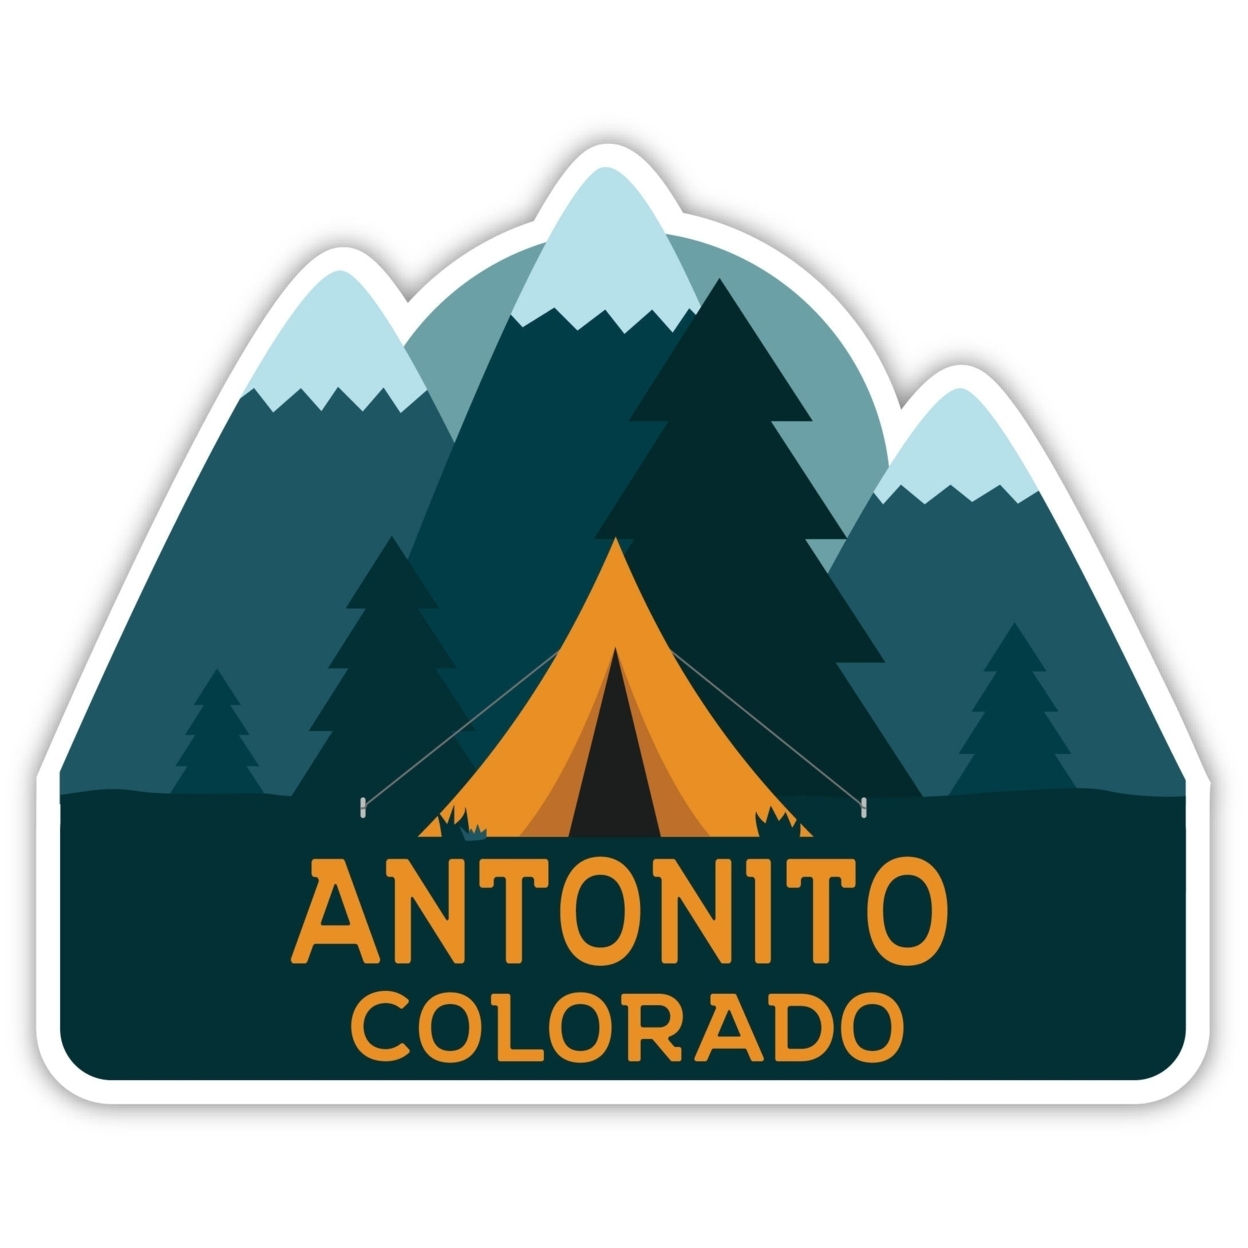 Antonito Colorado Souvenir Decorative Stickers (Choose Theme And Size) - Single Unit, 8-Inch, Tent